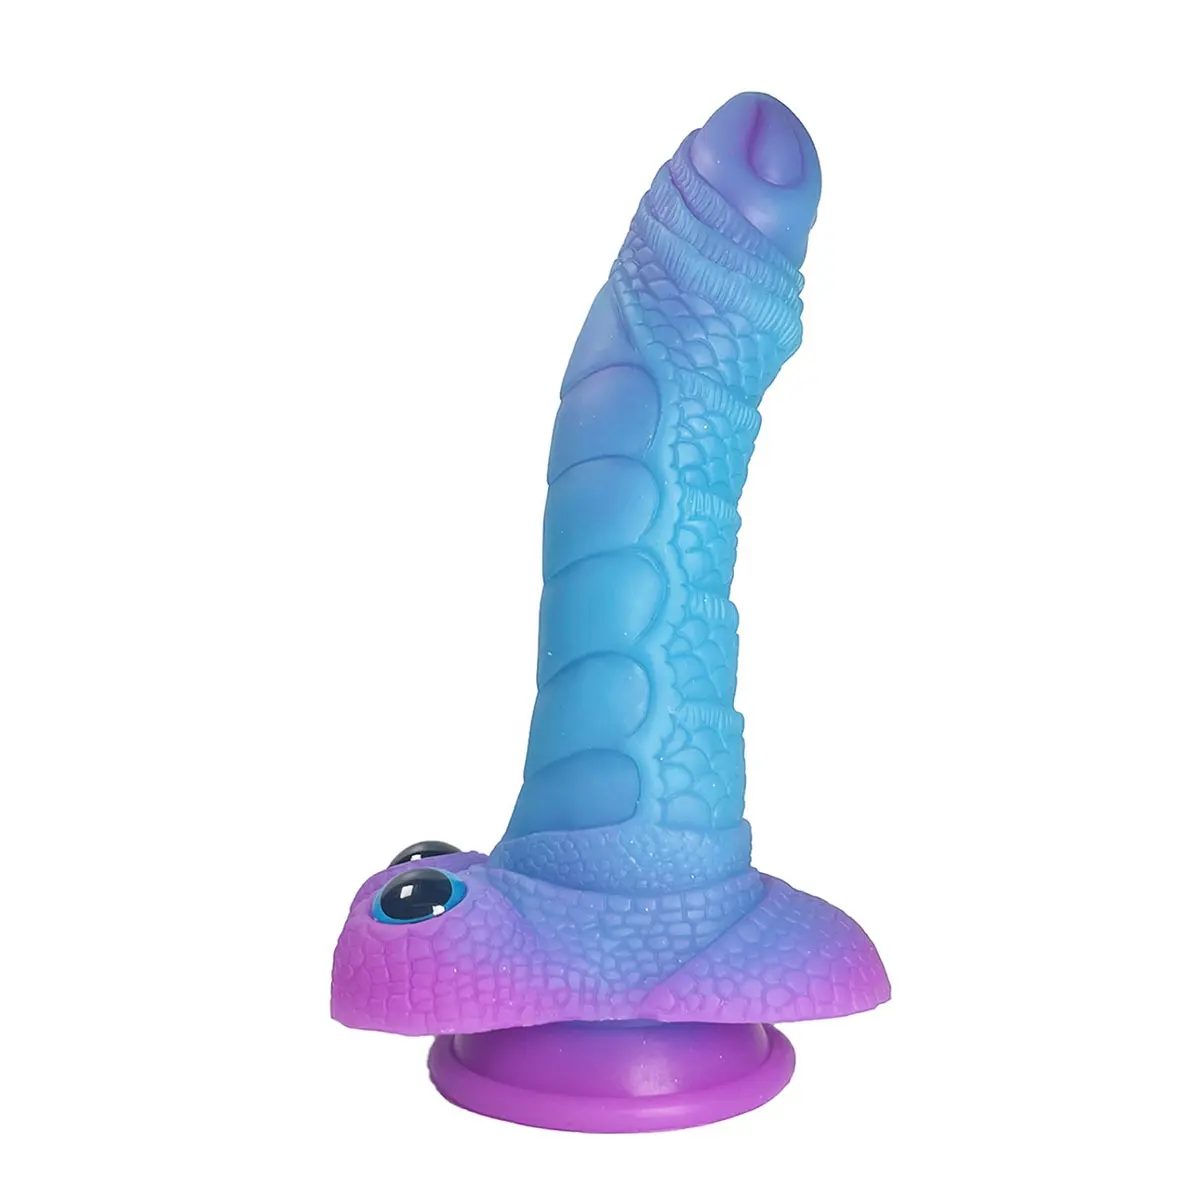 Juguete sexual recto enorme de alta calidad, consolador de elefante de silicona artificial, juguetes anales suaves y flexibles, tapón anal para hombre realista